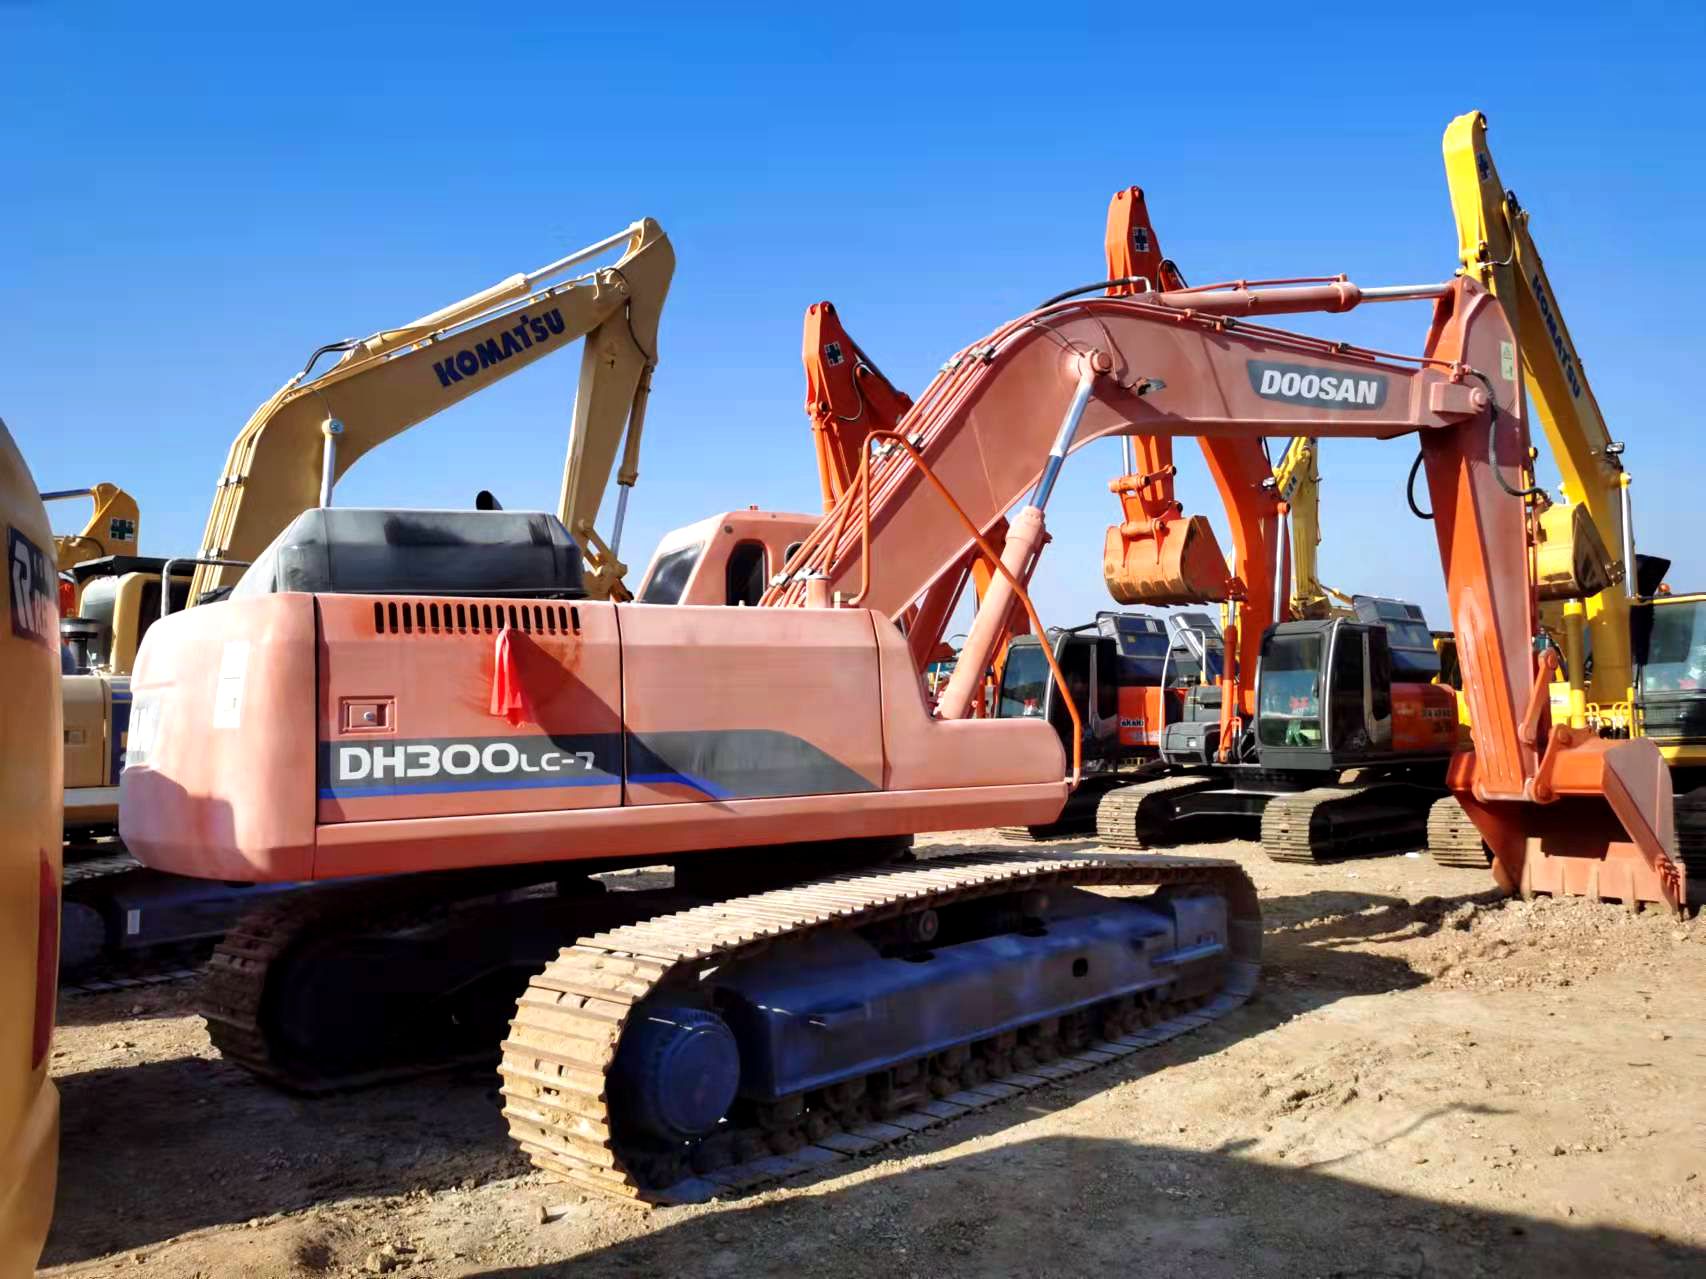 Doosan DH300LC-7 excavator